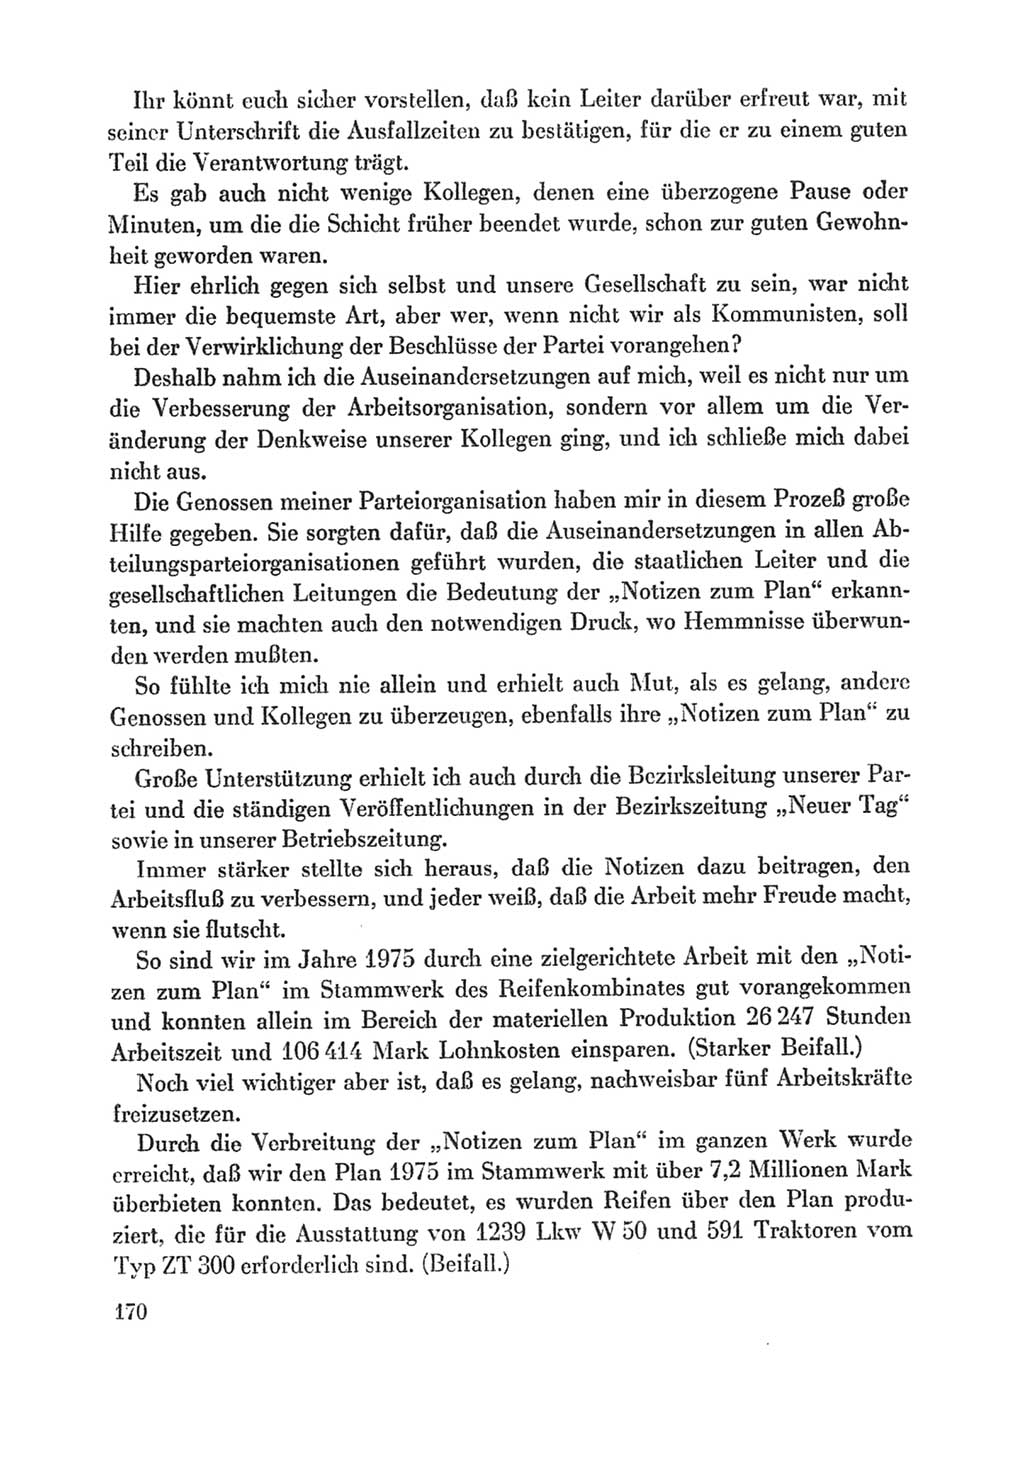 Protokoll der Verhandlungen des Ⅸ. Parteitages der Sozialistischen Einheitspartei Deutschlands (SED) [Deutsche Demokratische Republik (DDR)] 1976, Band 1, Seite 170 (Prot. Verh. Ⅸ. PT SED DDR 1976, Bd. 1, S. 170)